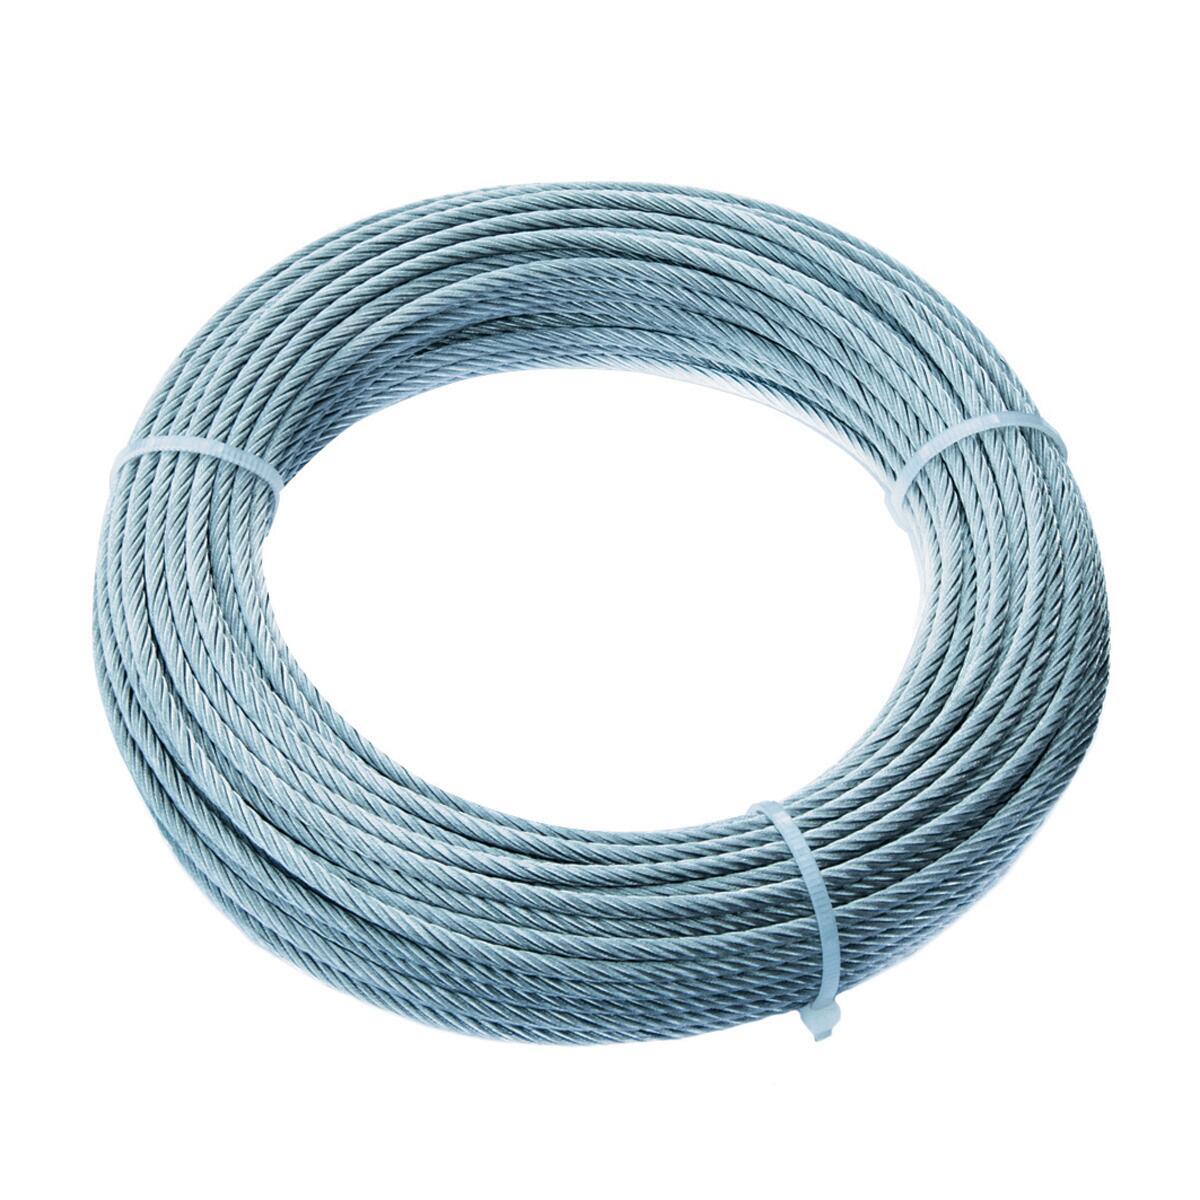 ROSSO PVC rivestito FUNE acciaio zincato galvanizzato filo metallo corda 